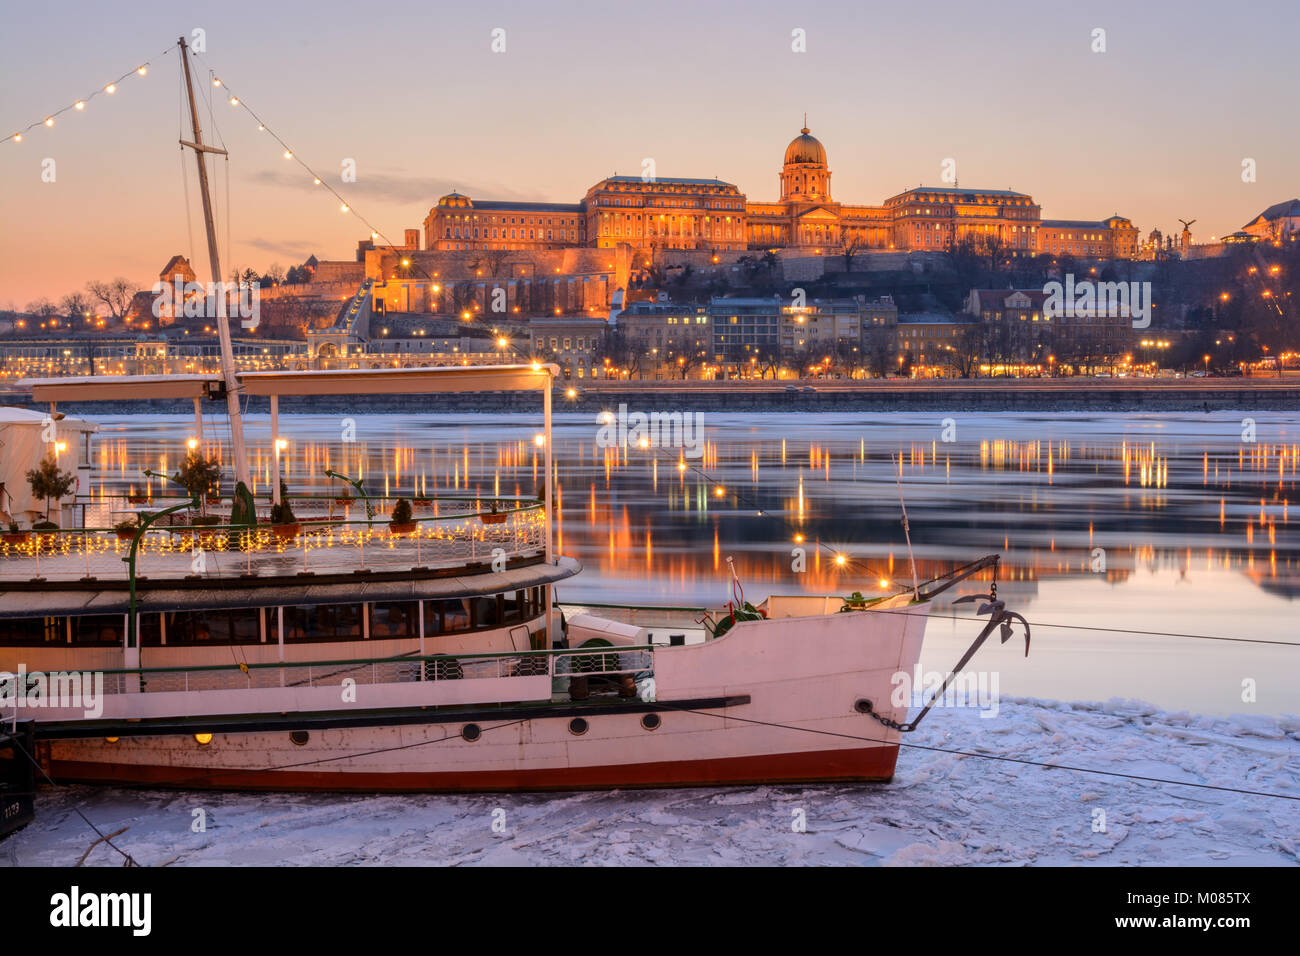 Illuminated boat against Royal palace in Budapest Stock Photo